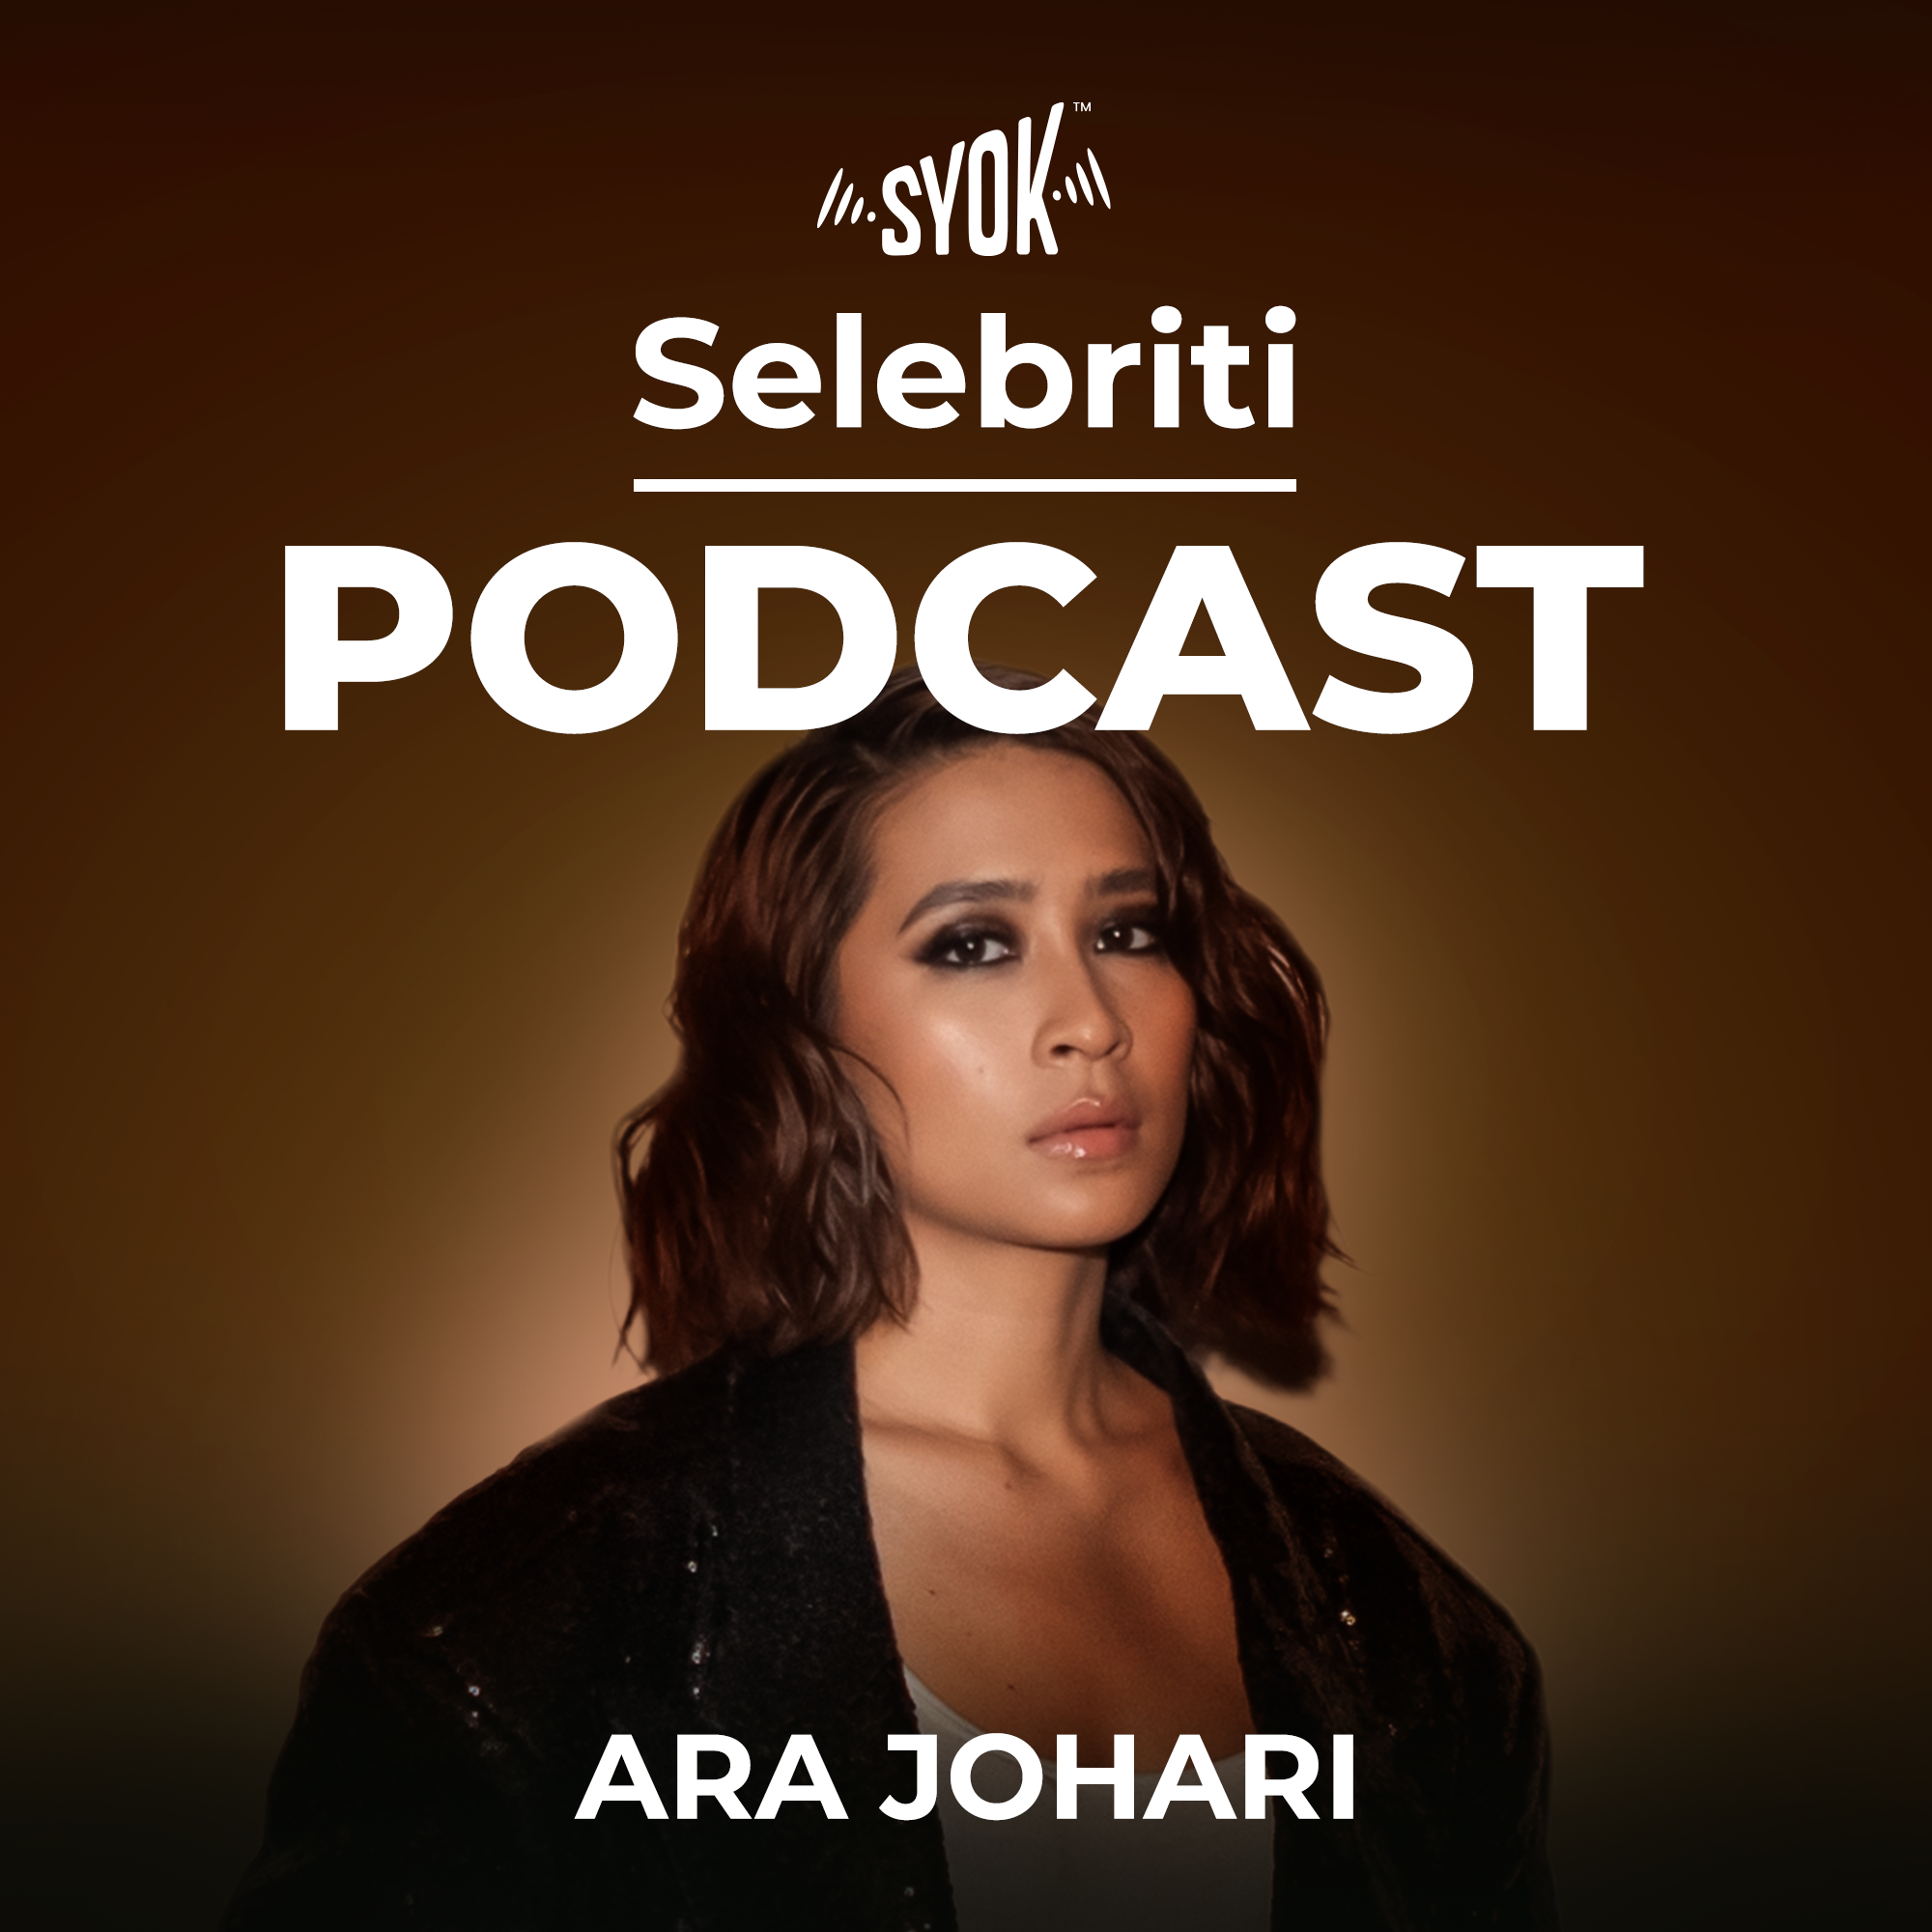 Selebriti Podcast: Ara Johari - SYOK Podcast [BM]